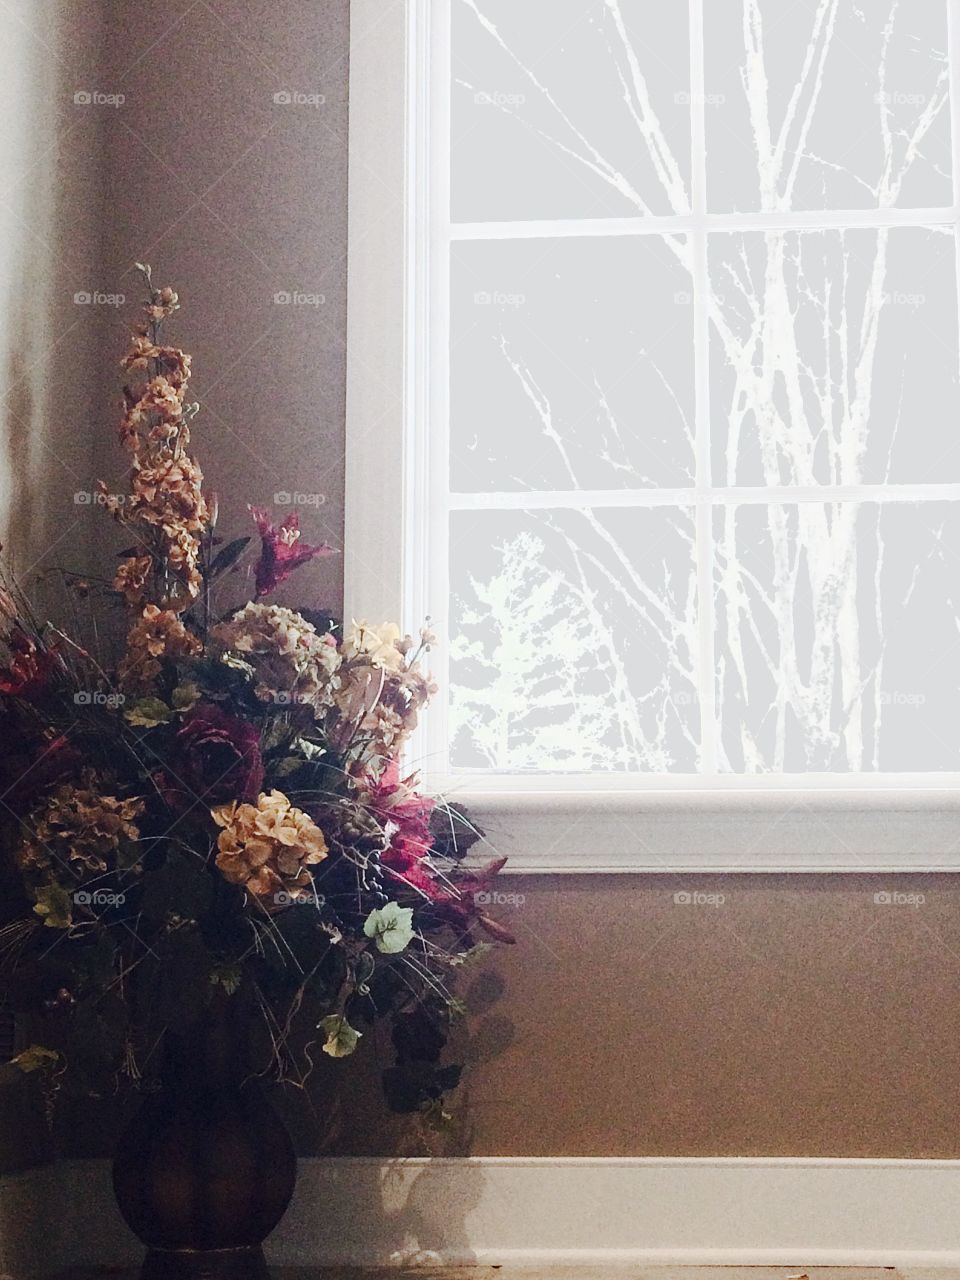 Flowers-case:trees-window